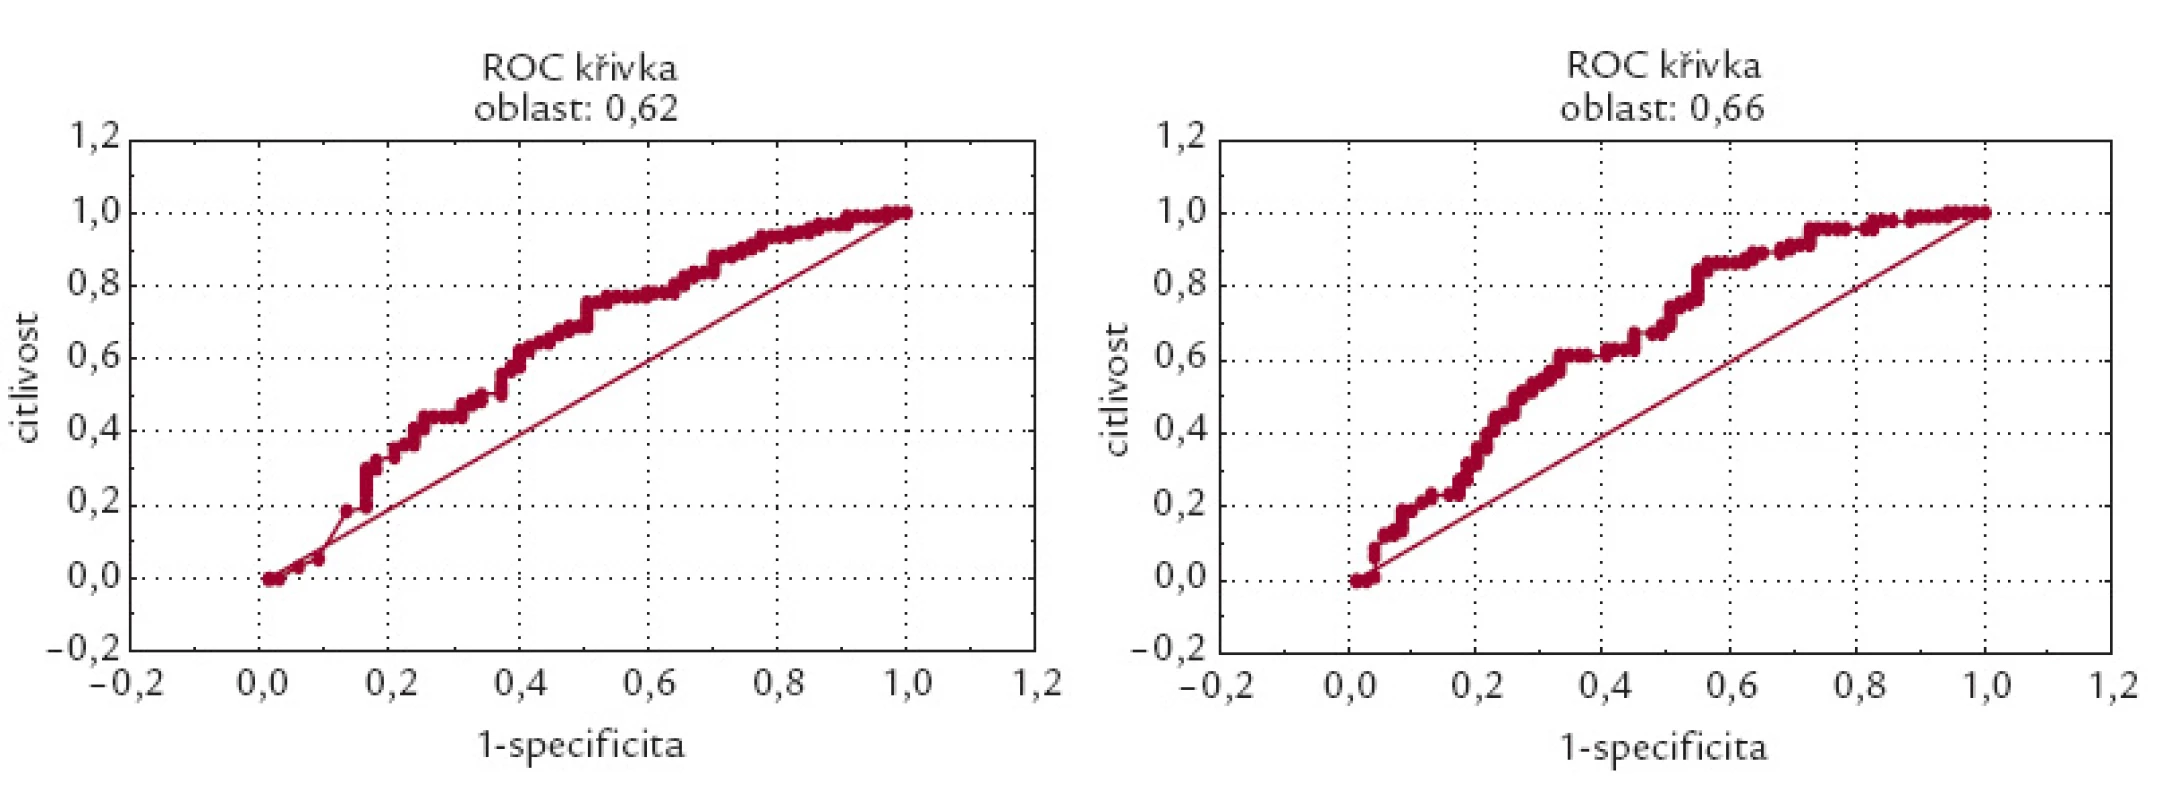 ROC křivka pro BNP (levá část grafu) a NT-proBNP (pravá část grafu) celého souboru. Plocha pod křivkou BNP je rovna 0,62, resp. plocha pod křivkou je 0,66 pro NT-proBNP.